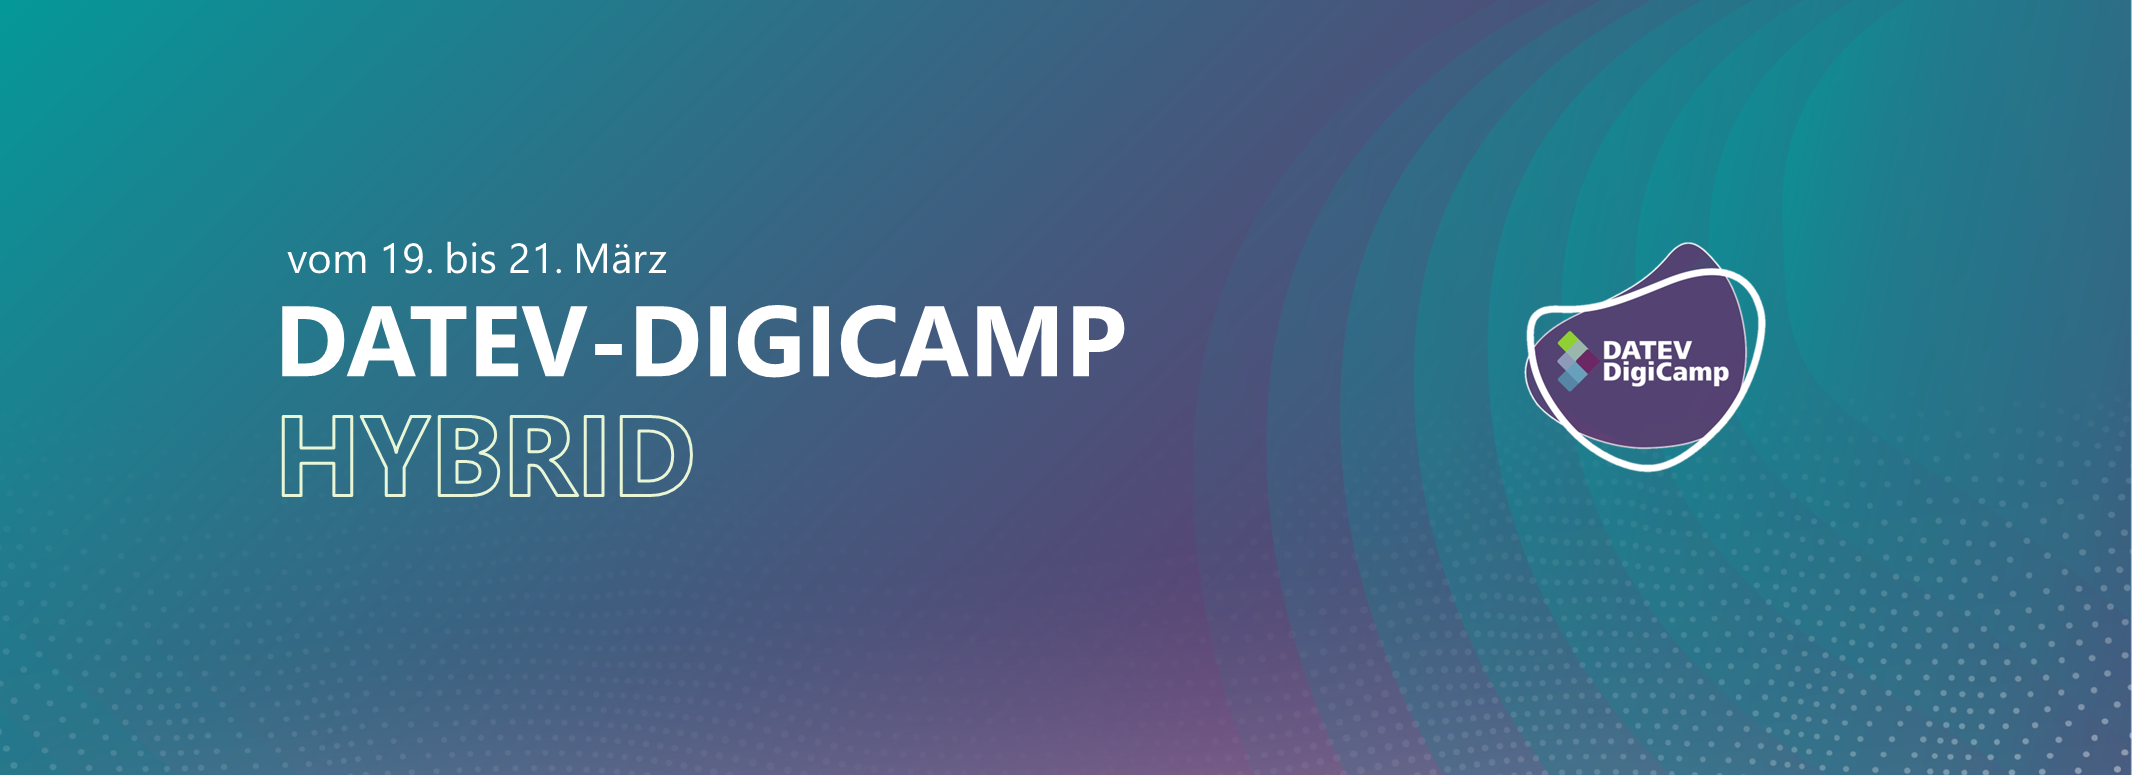 vom 19. bis 21. März 
DATEV-DigiCamp
HYBRID